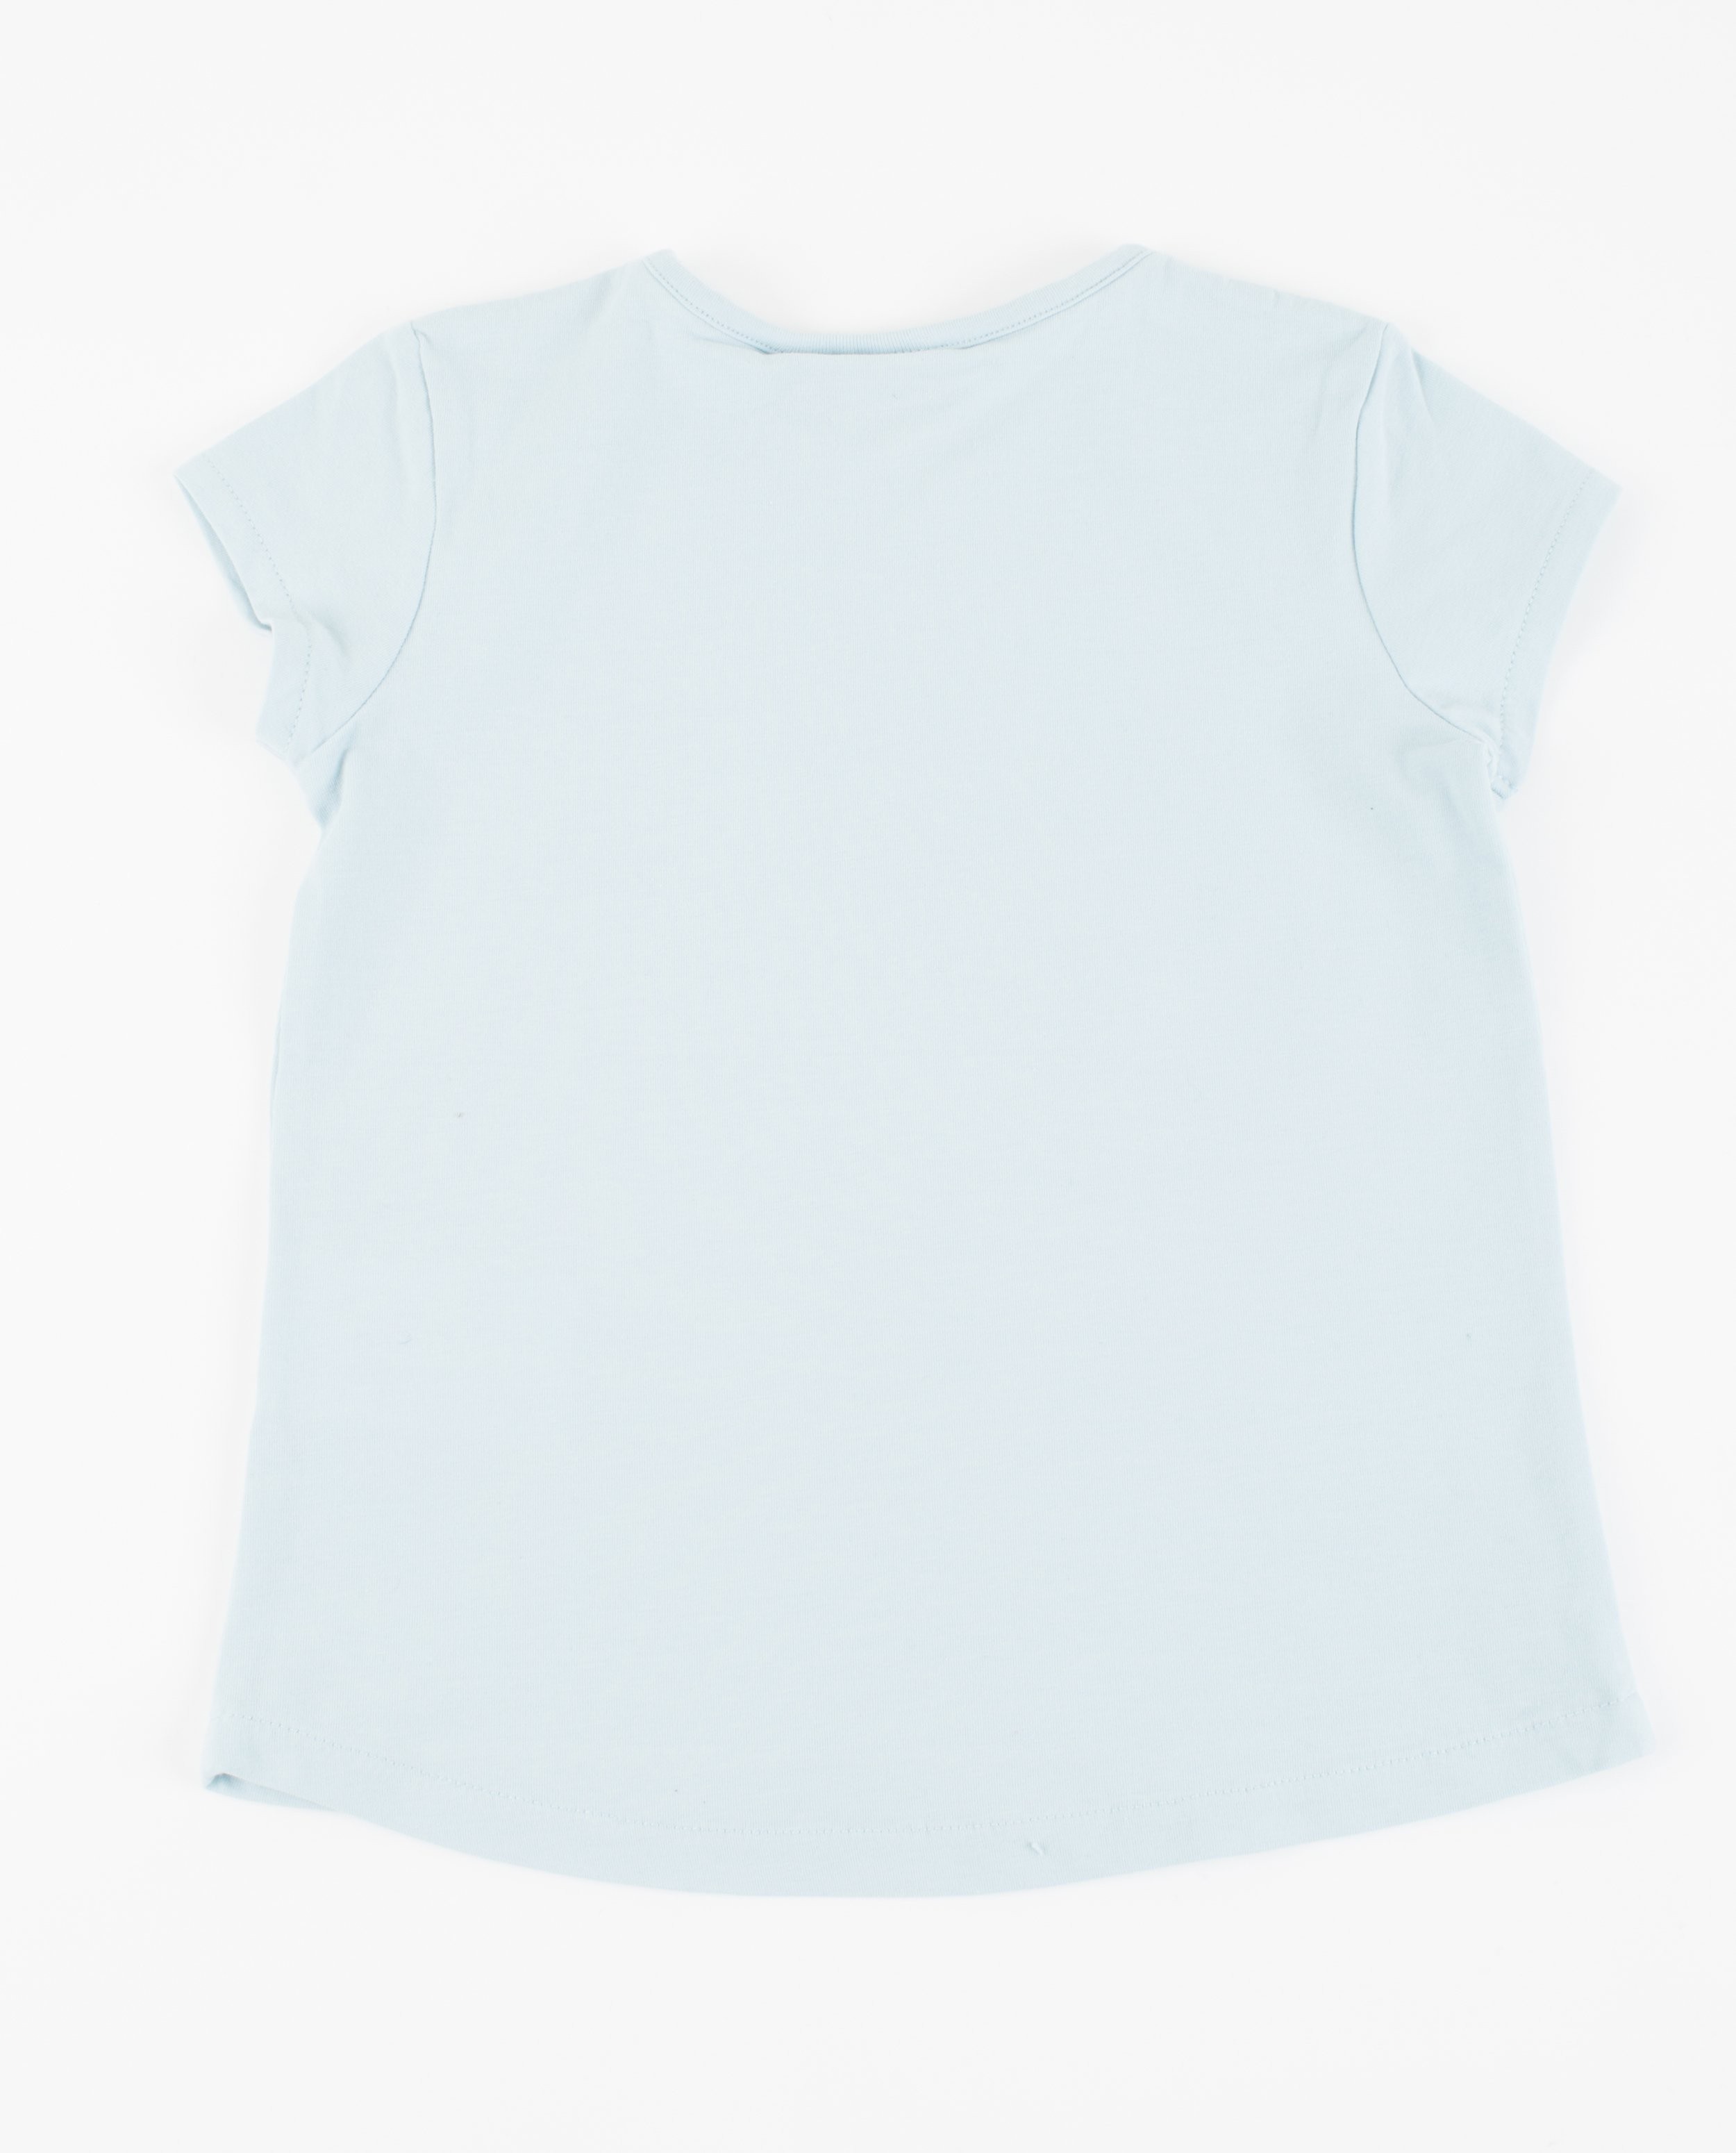 T-shirts - Lichtblauw T-shirt met print Plop